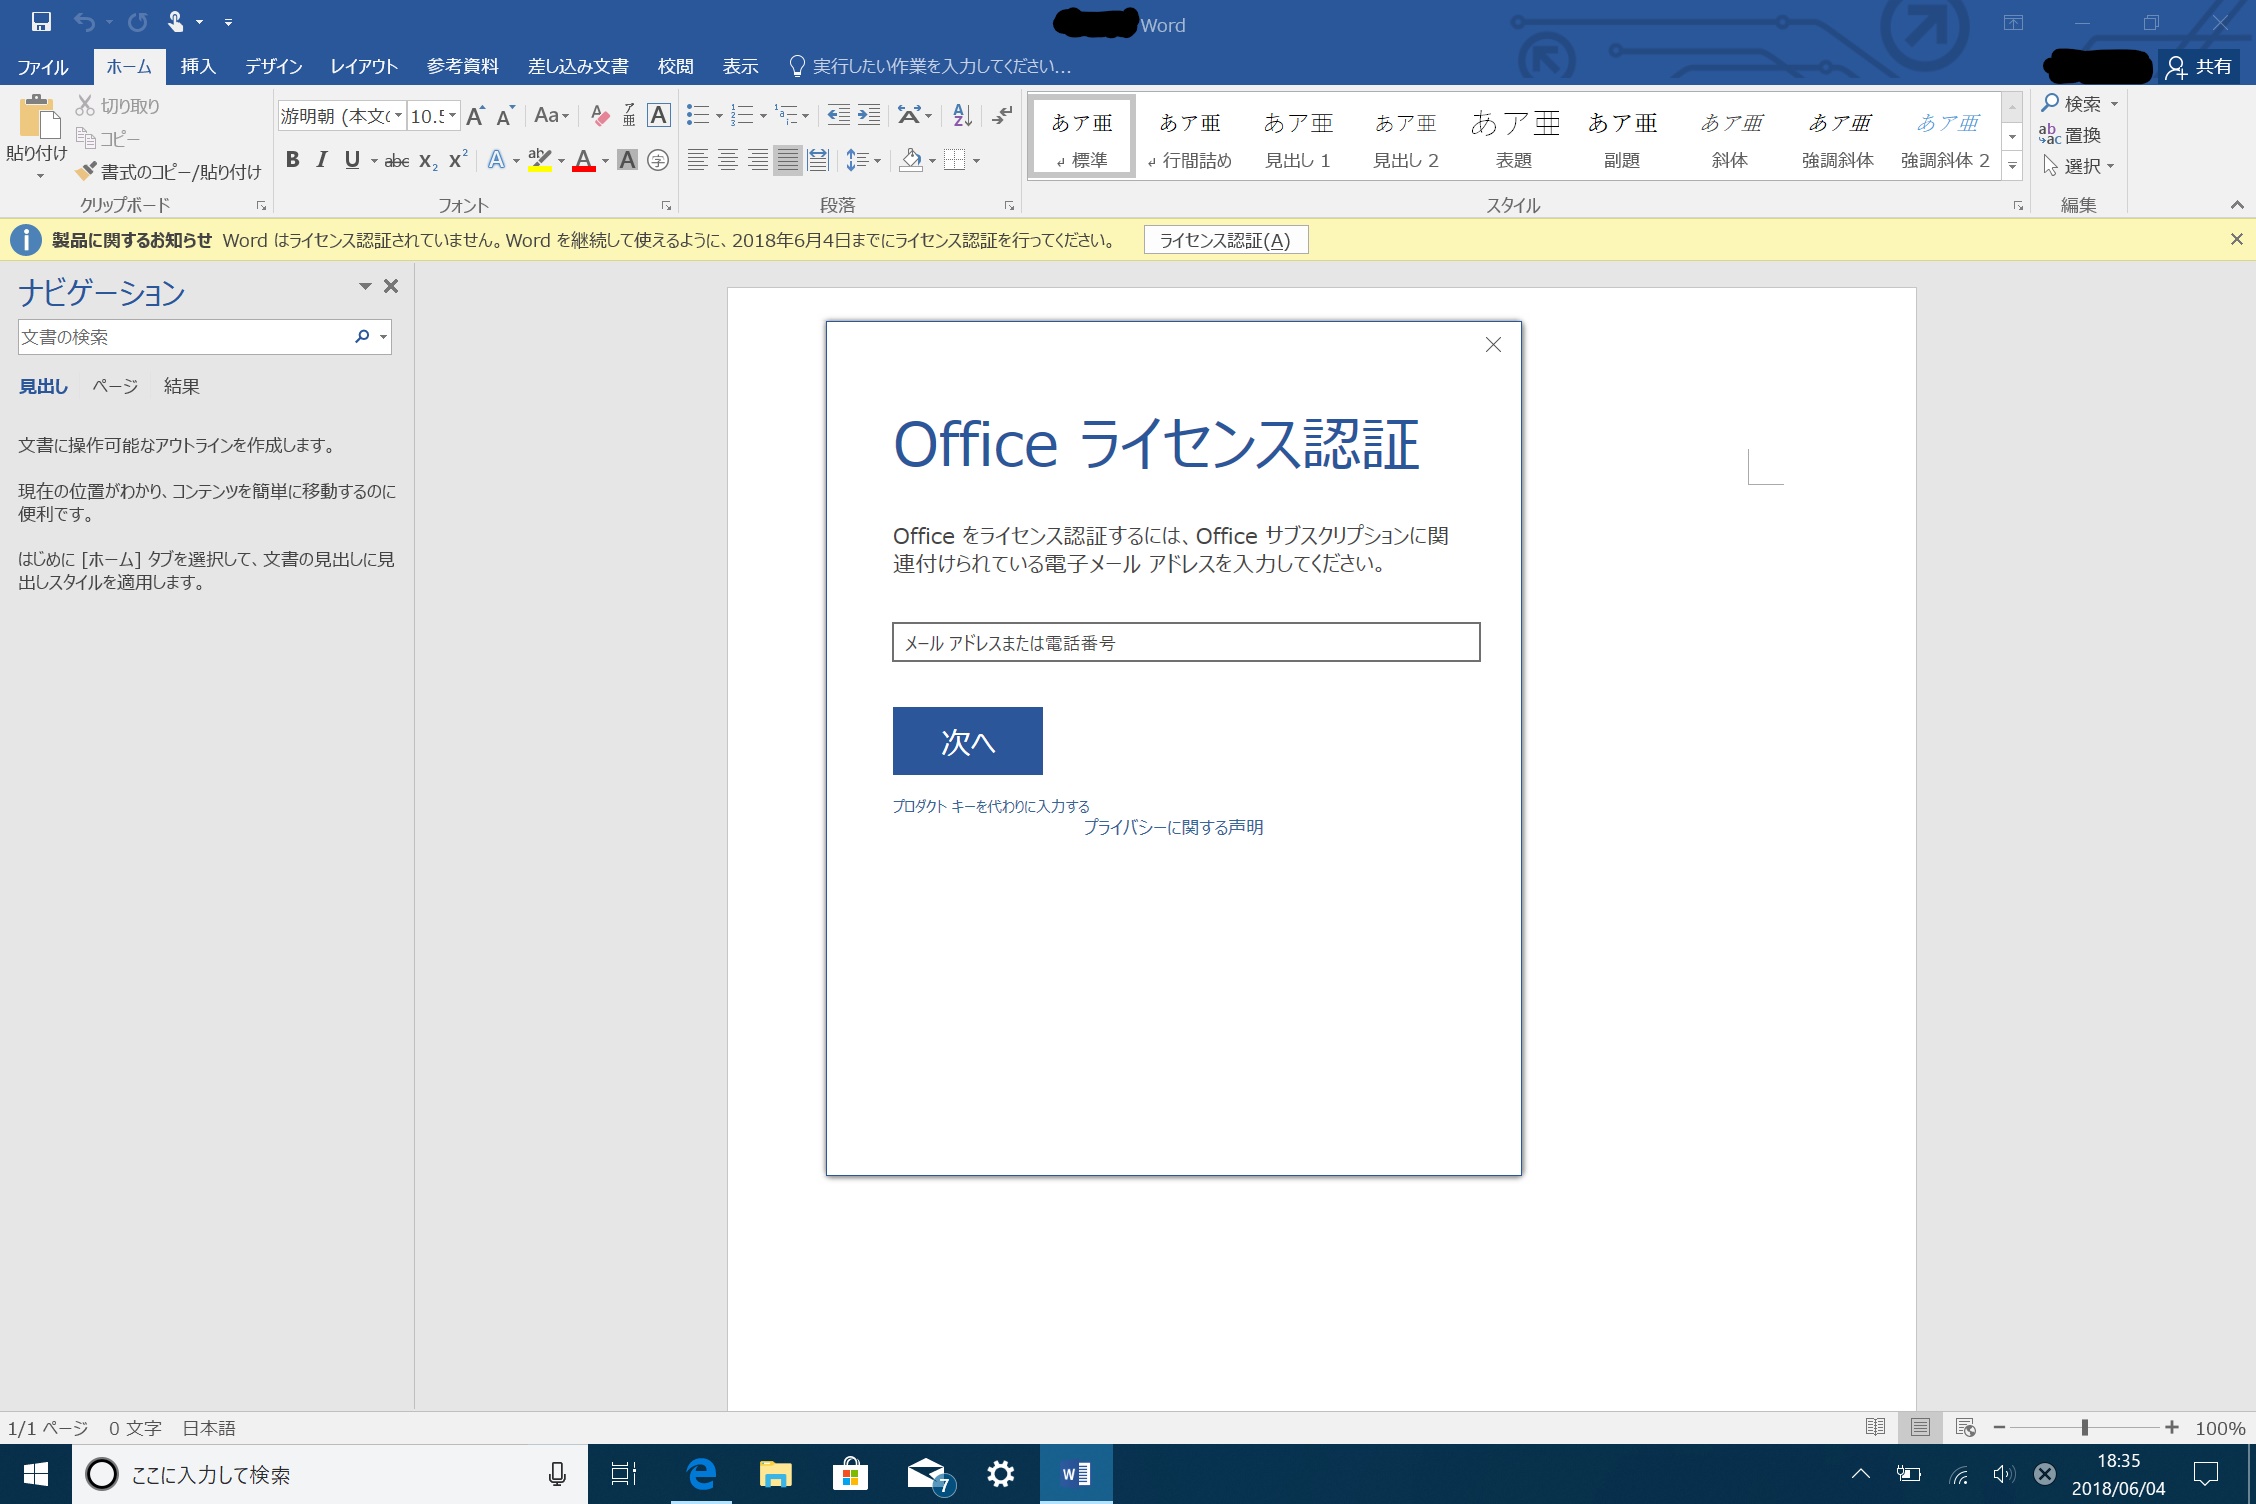 Microsoft Office Professional Plus 16 のライセンス認証ができない マイクロソフト コミュニティ